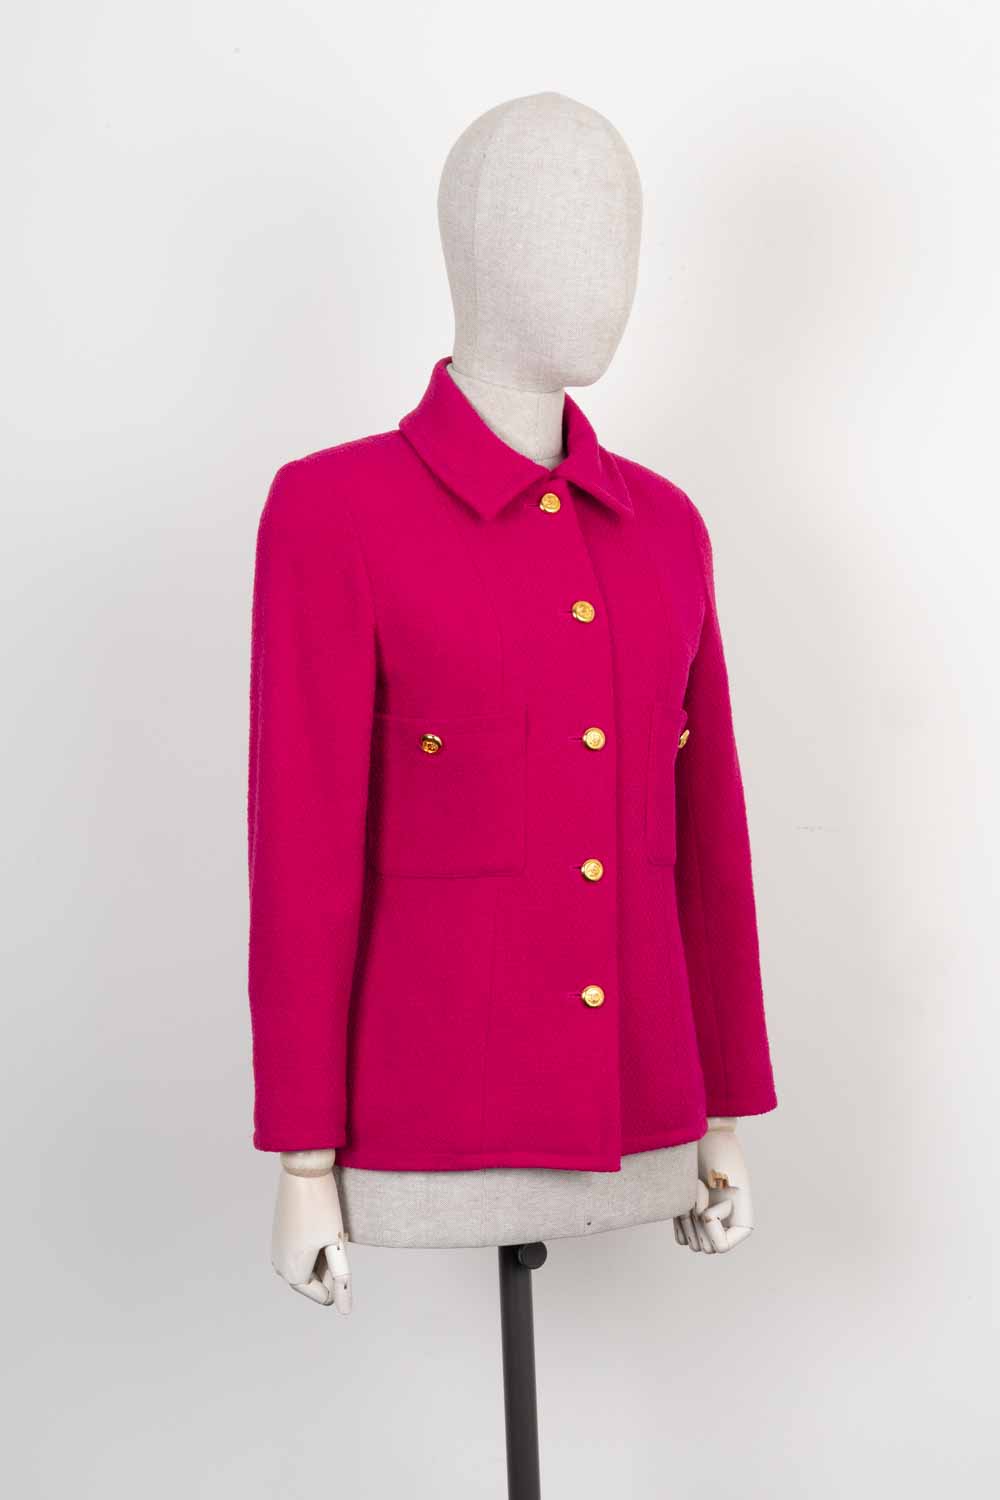 CHANEL Vintage Jacket Pink